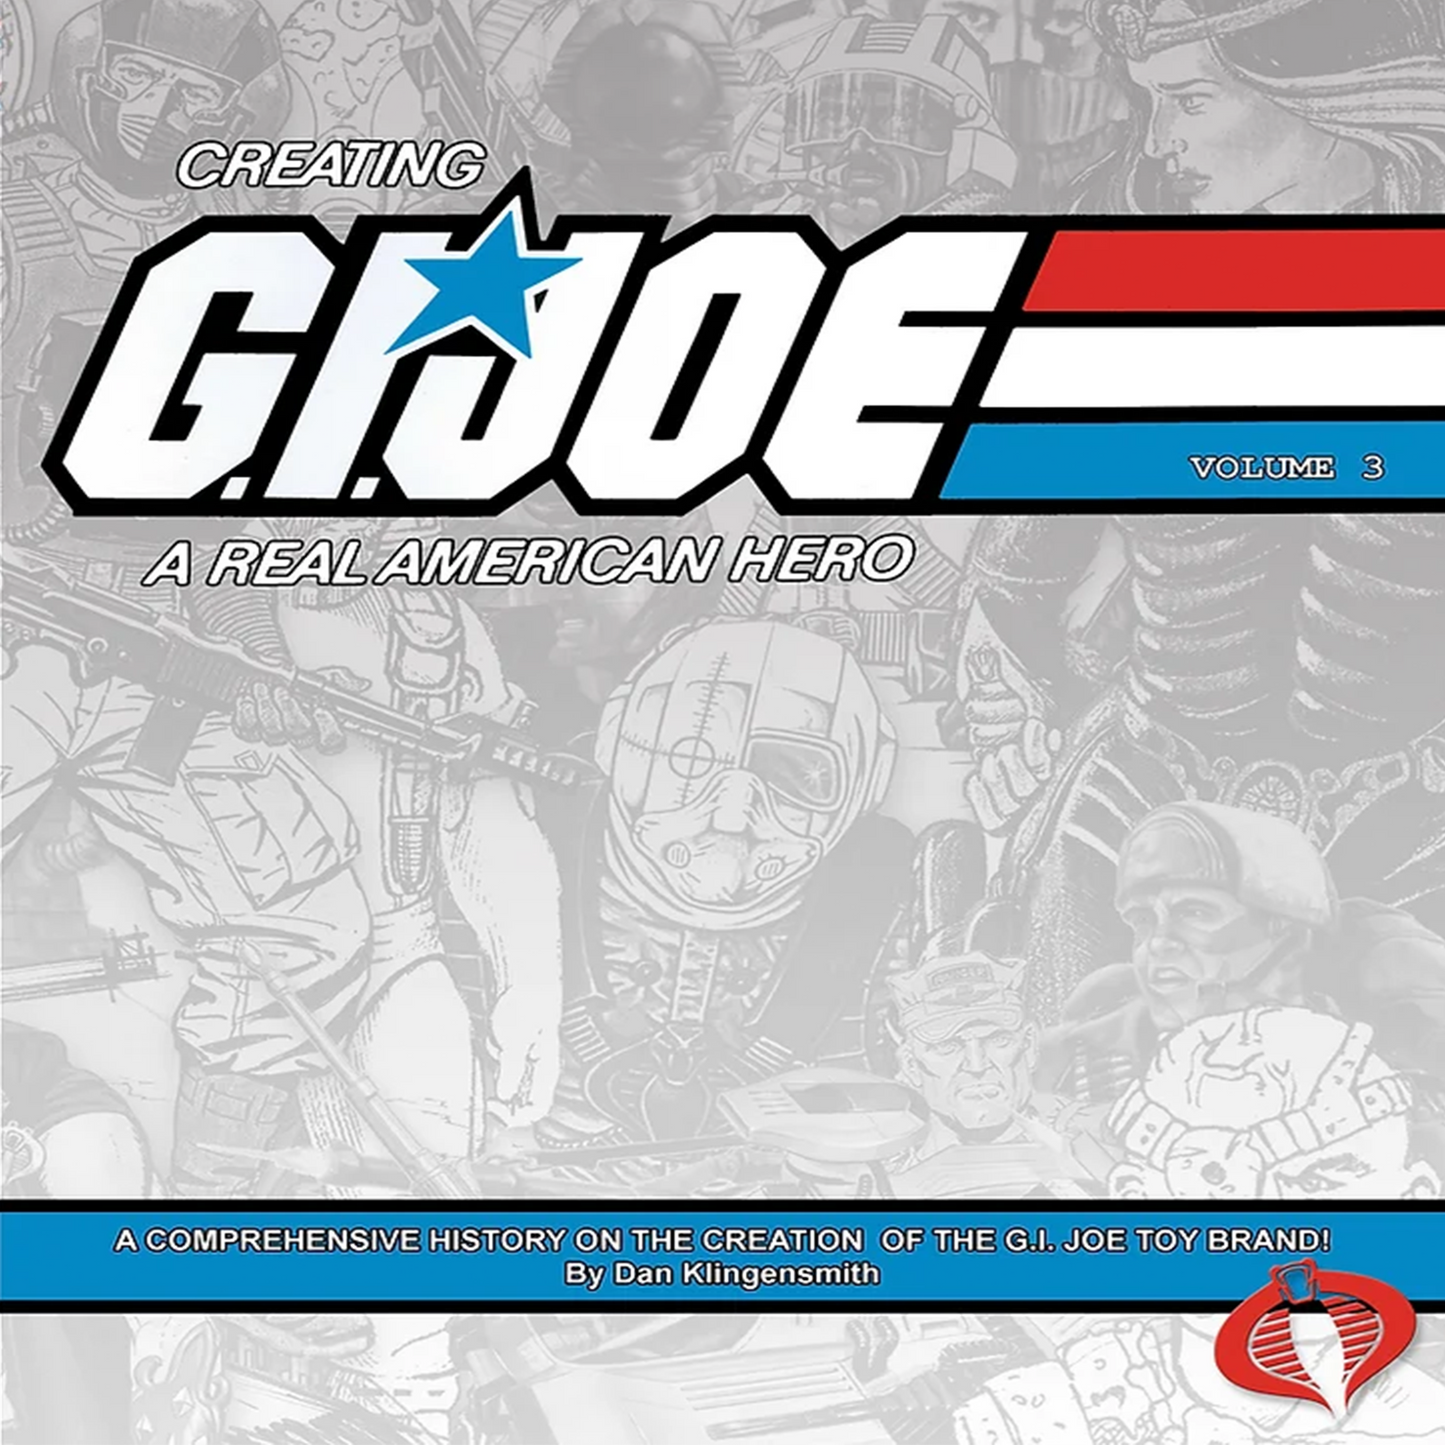 Creating G.I. Joe: A Real American Hero Volume 3